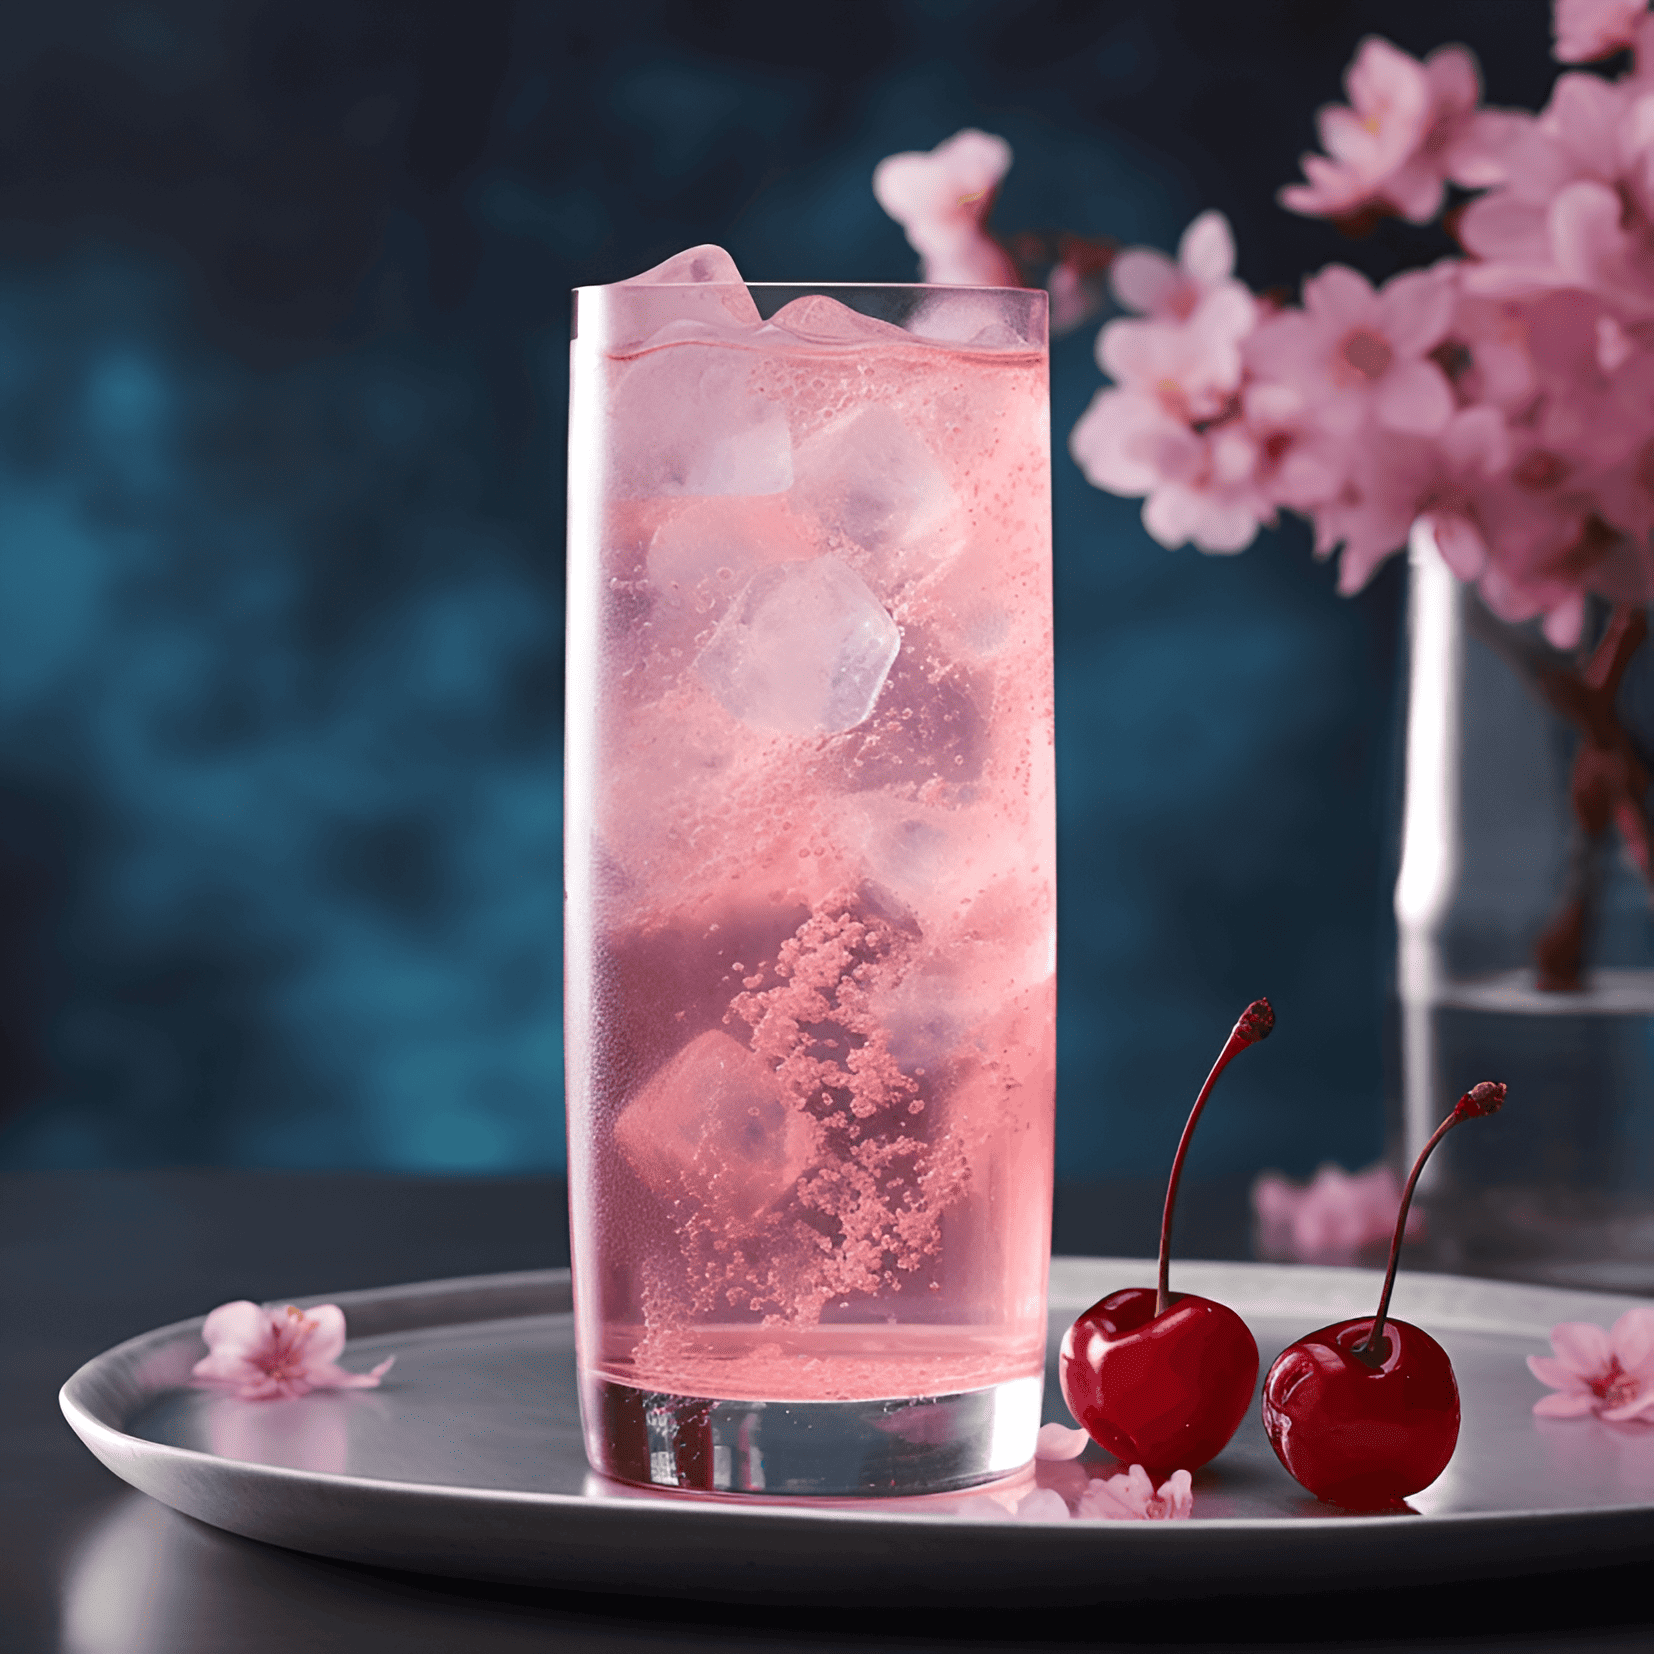 El cóctel Cherry Blossom tiene un sabor delicado, afrutado y floral. Es ligeramente dulce, con un toque de acidez de los sabores de cereza y cítricos. Las notas florales del licor de flor de saúco agregan un toque de sofisticación, mientras que el gin proporciona un sutil y refrescante toque.